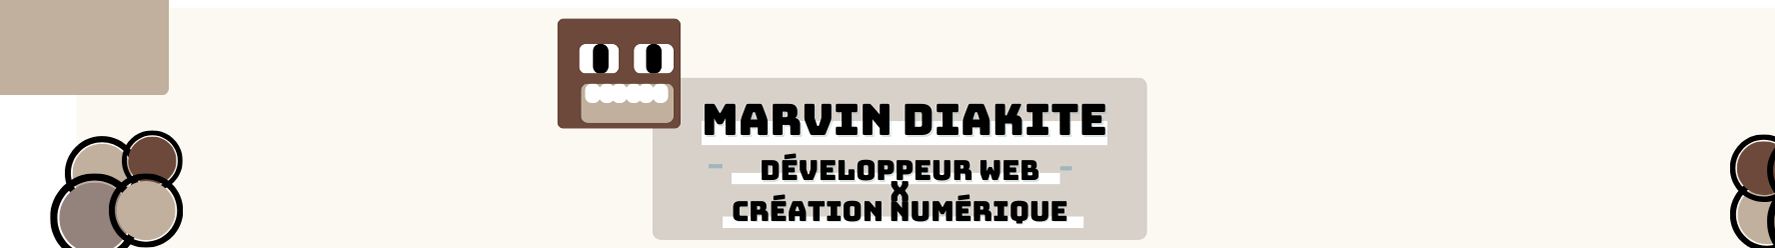 Banner de perfil de Marvin Diakite